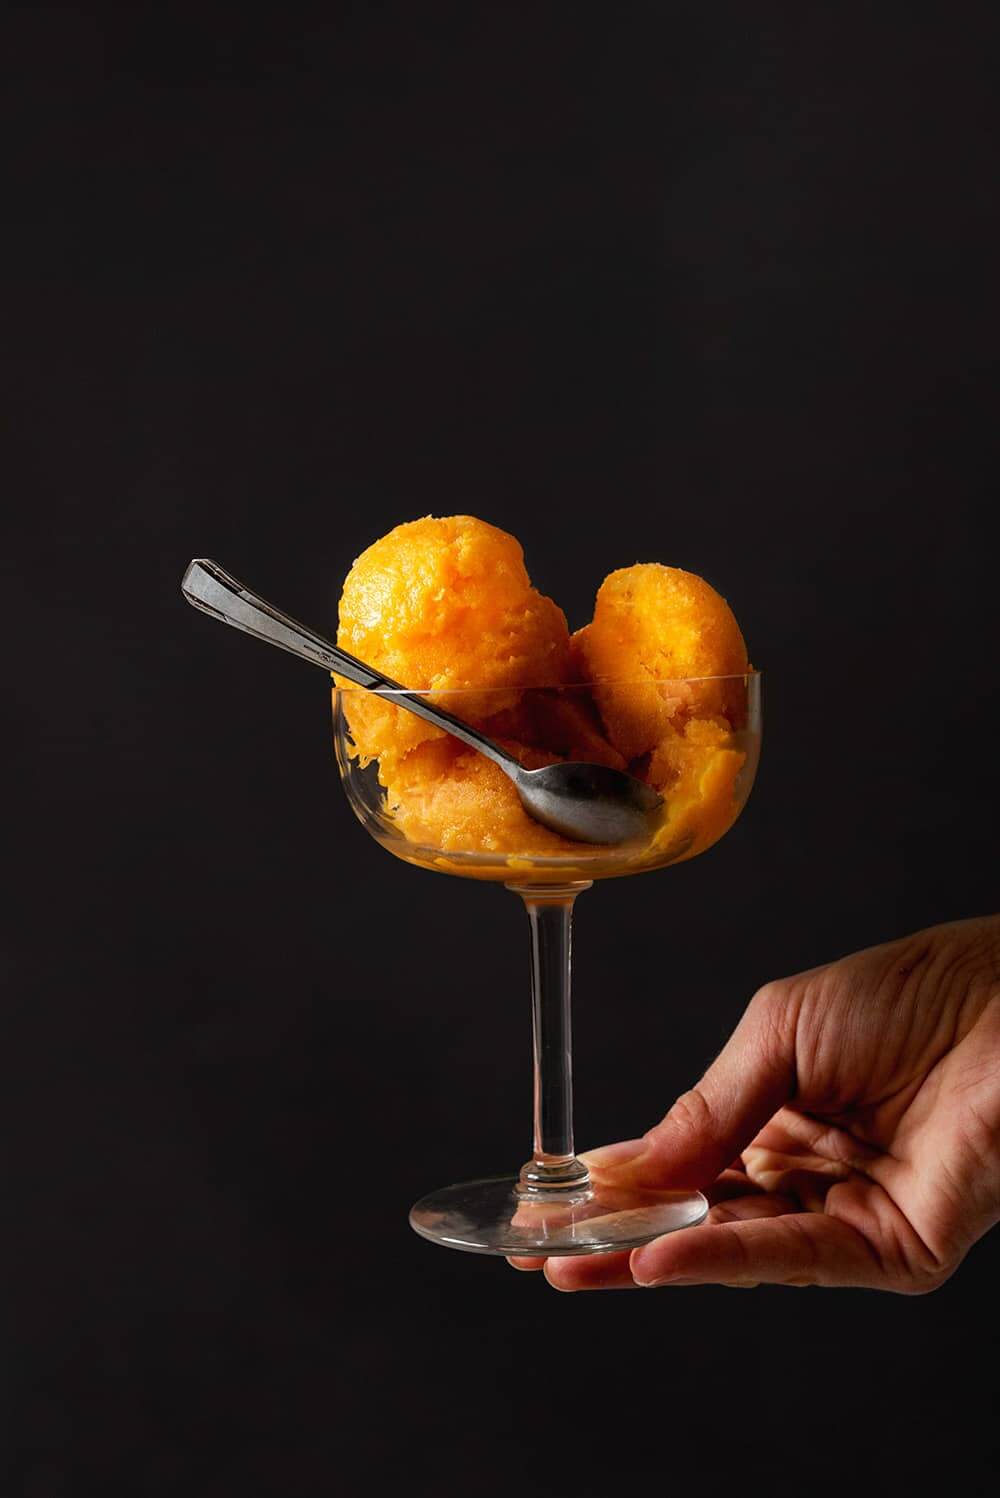 Una persona está sujetando en su mano una copa de helado. Dentro de la copa hay varias bolas de sorbete de mandarina sin alcohol.